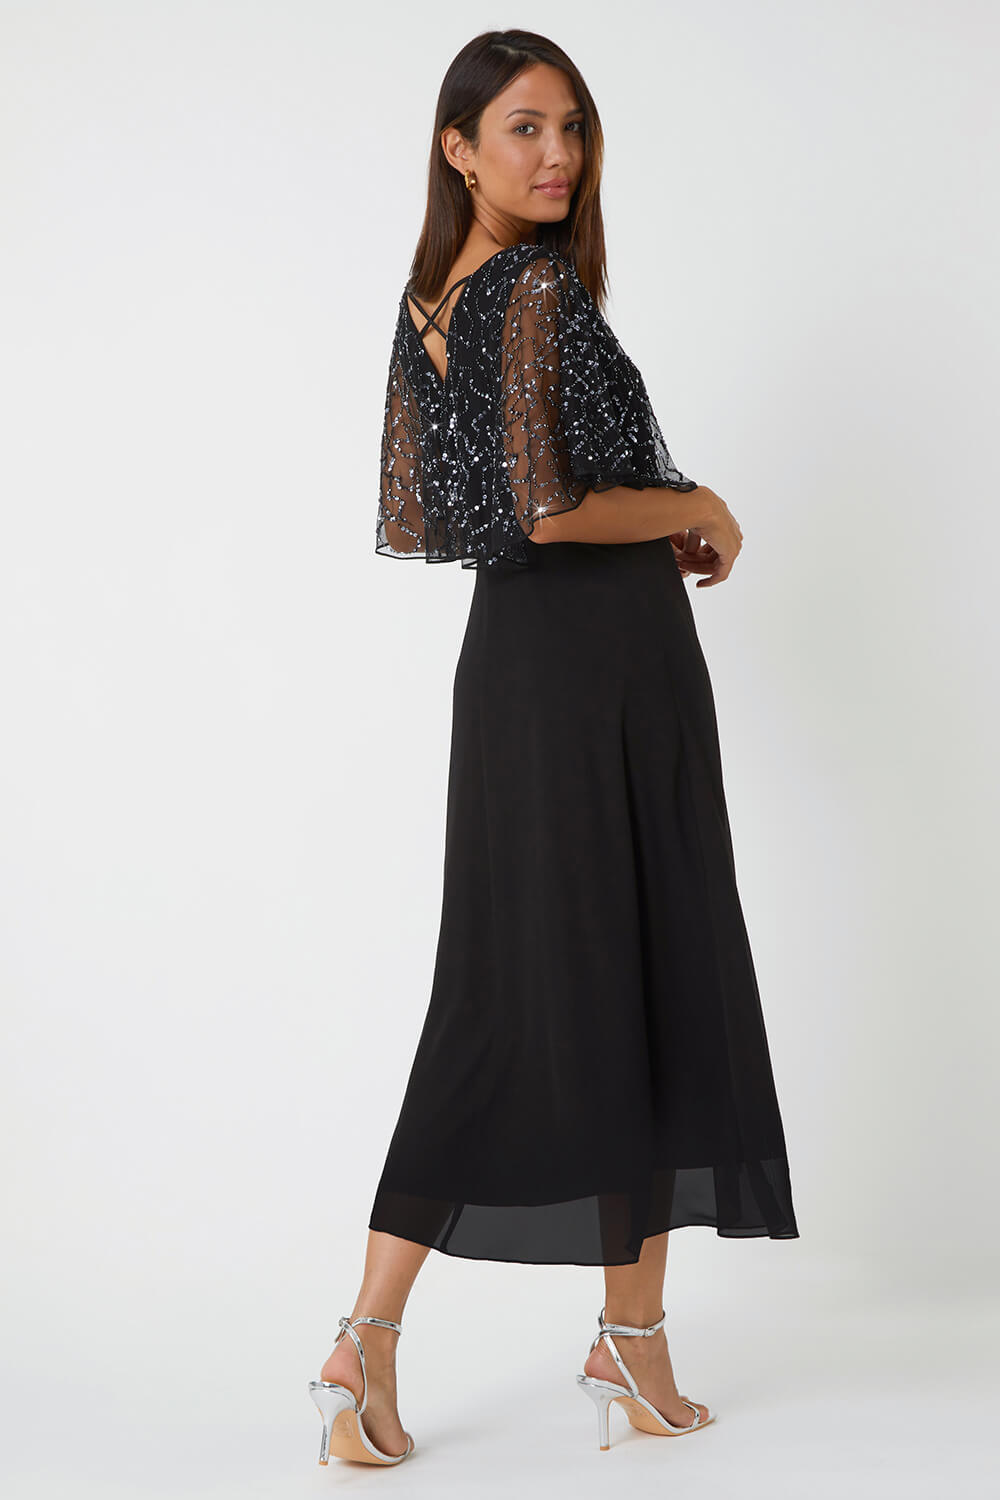 Black Sequin Embellished Chiffon Wrap Maxi Dress, Image 3 of 5